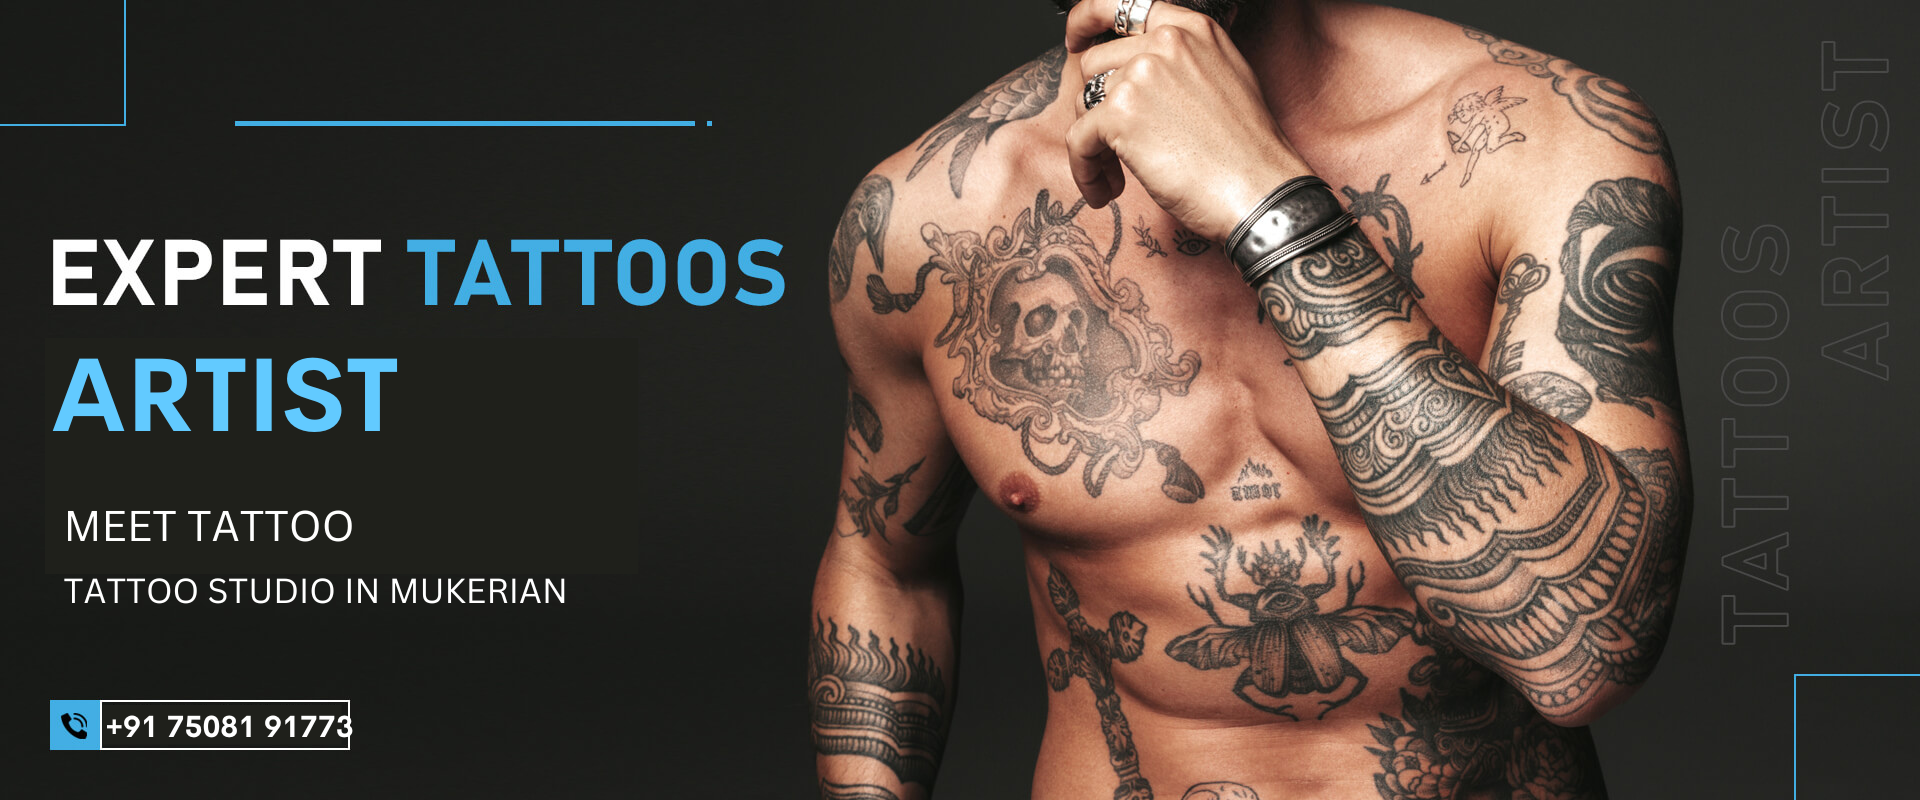 7 Tattoo Studio WordPress Themes